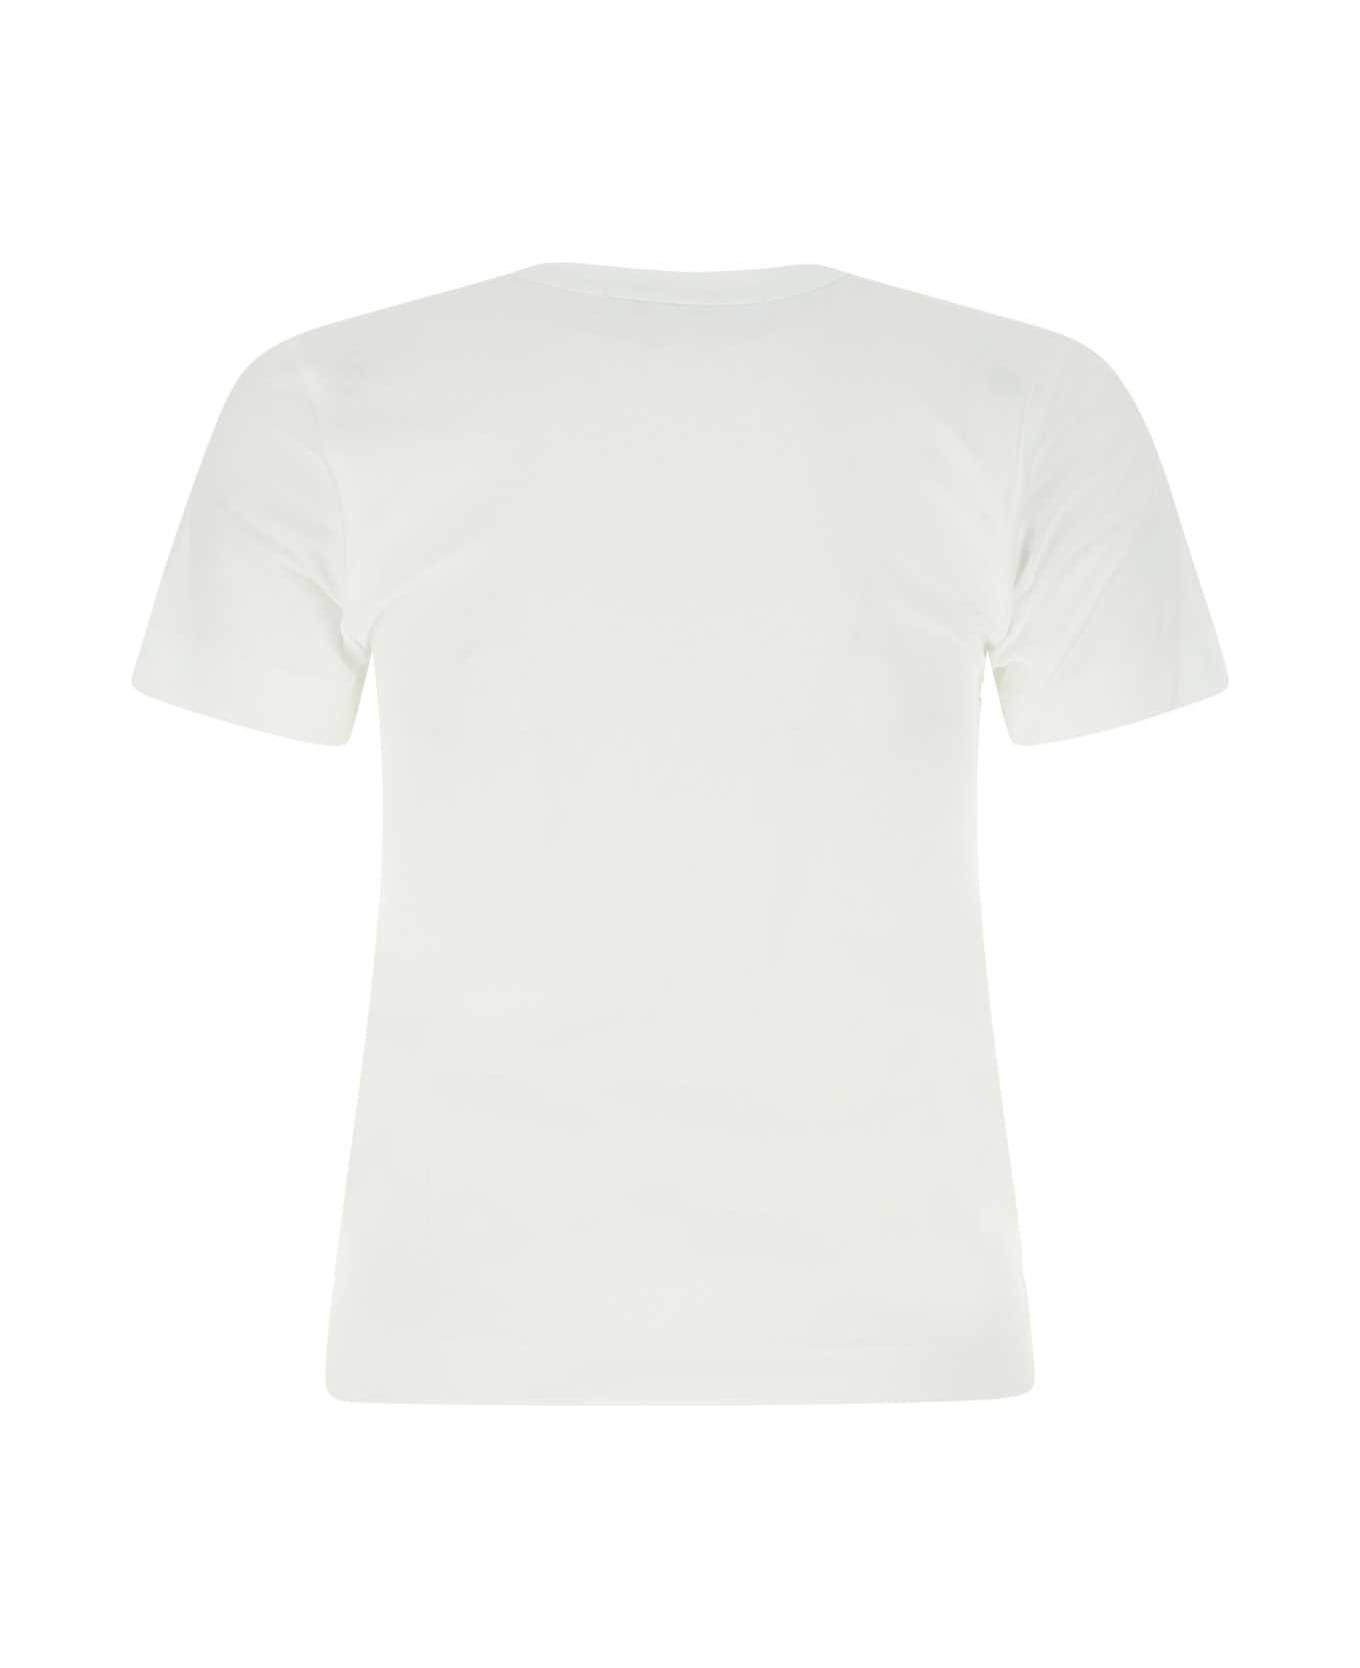 Comme des Garçons Play White Cotton T-shirt - PURPLE Tシャツ